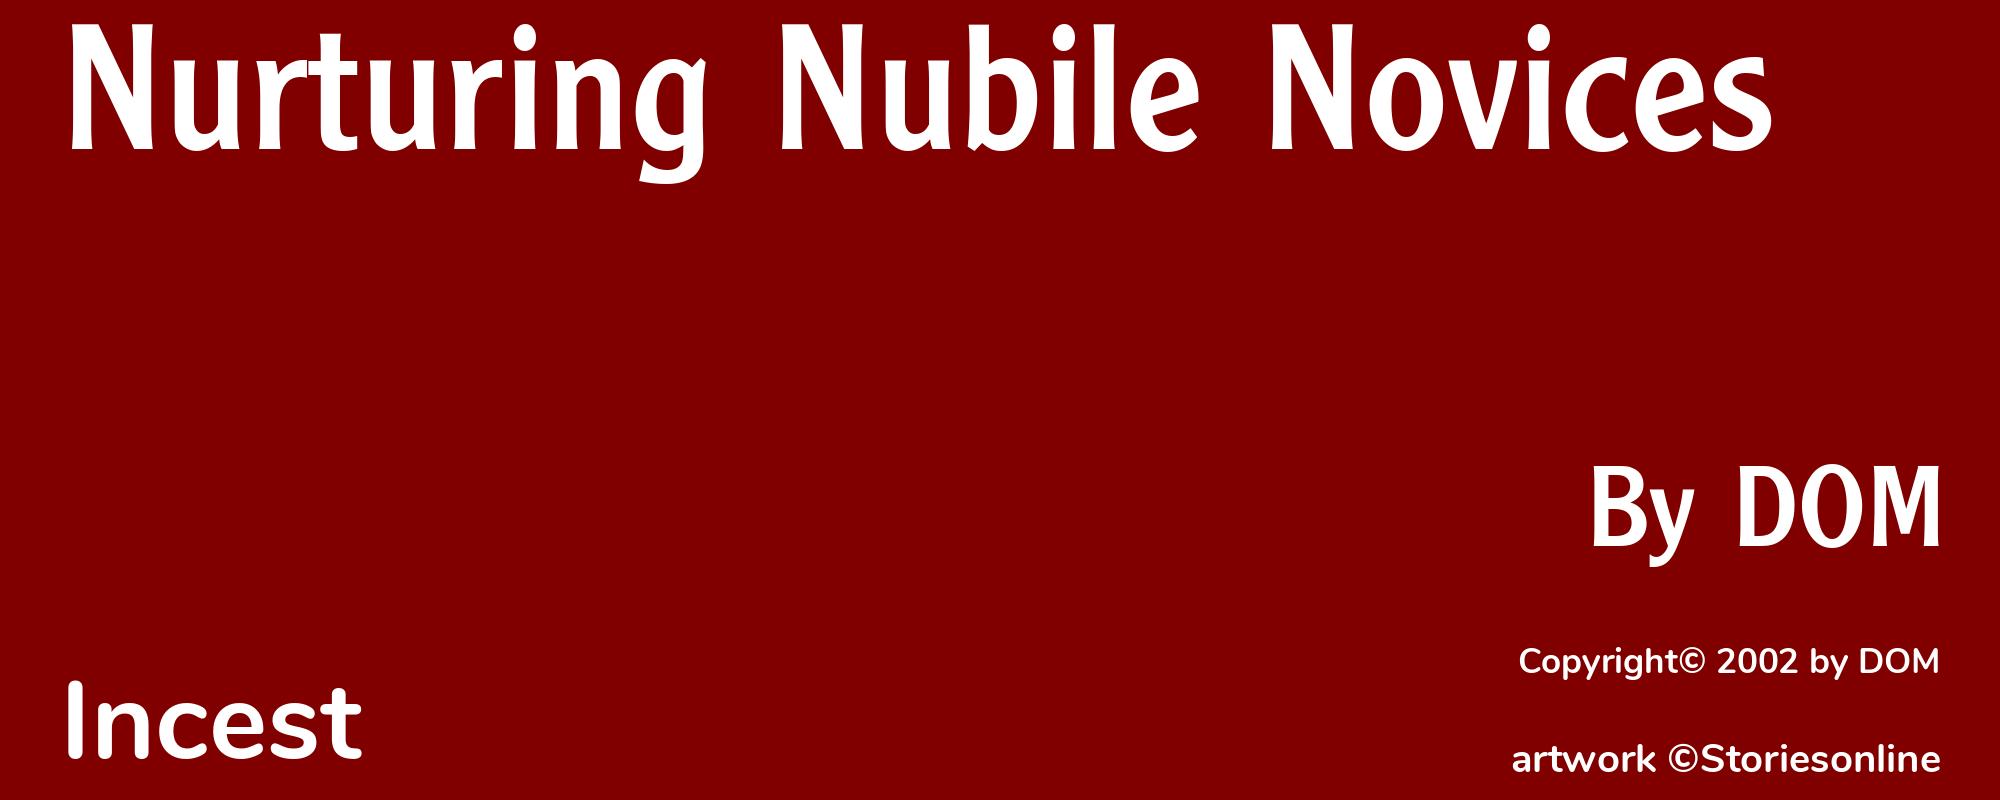 Nurturing Nubile Novices - Cover